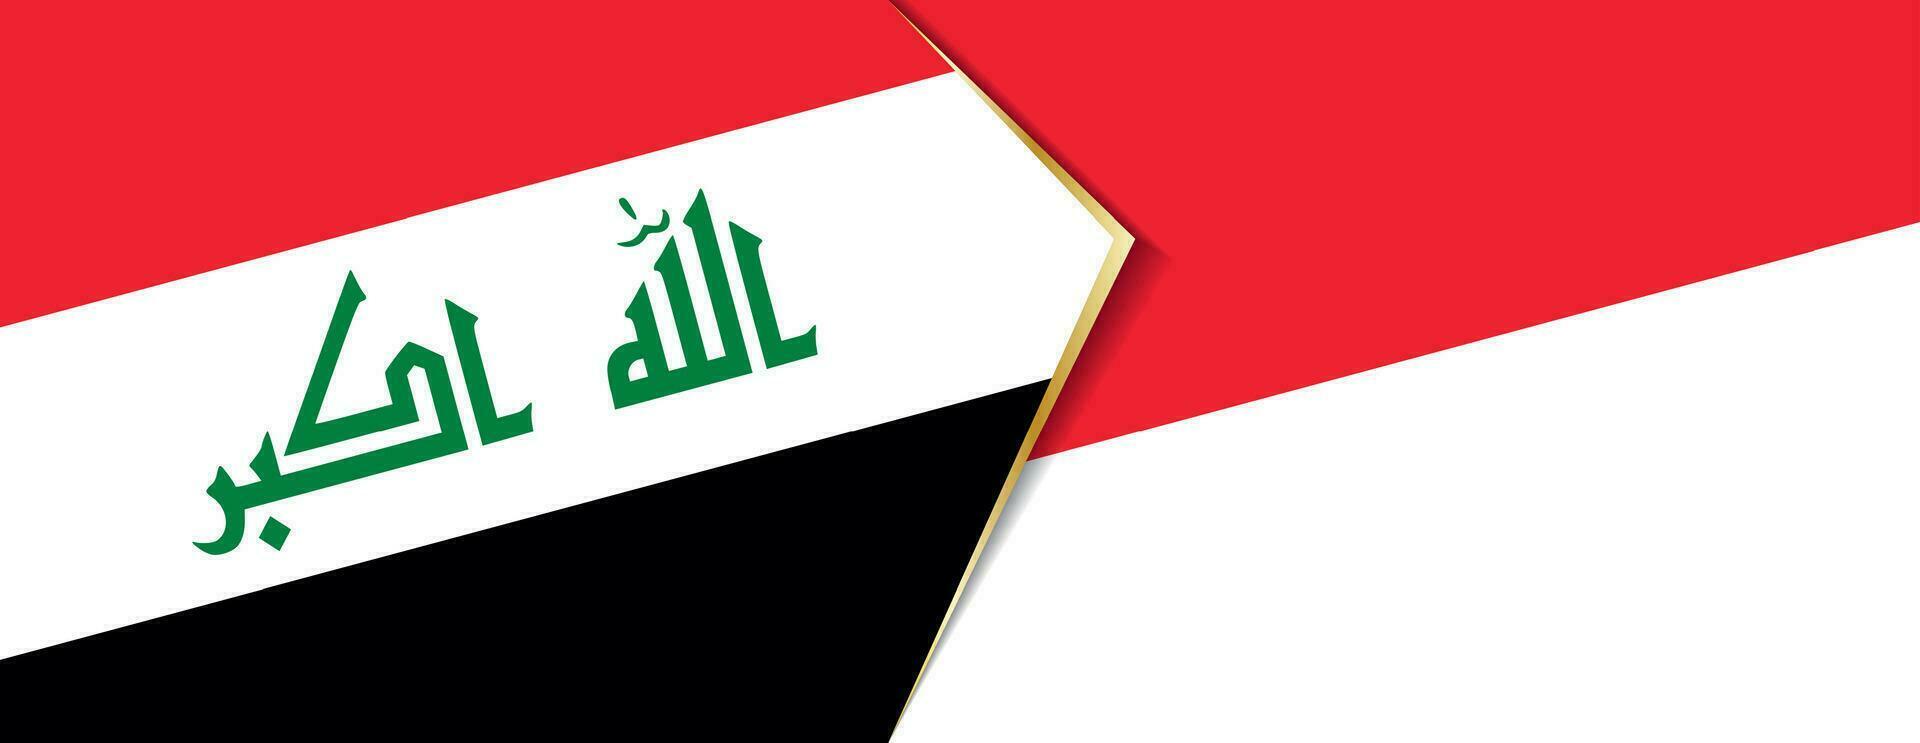 Irak y Indonesia banderas, dos vector banderas